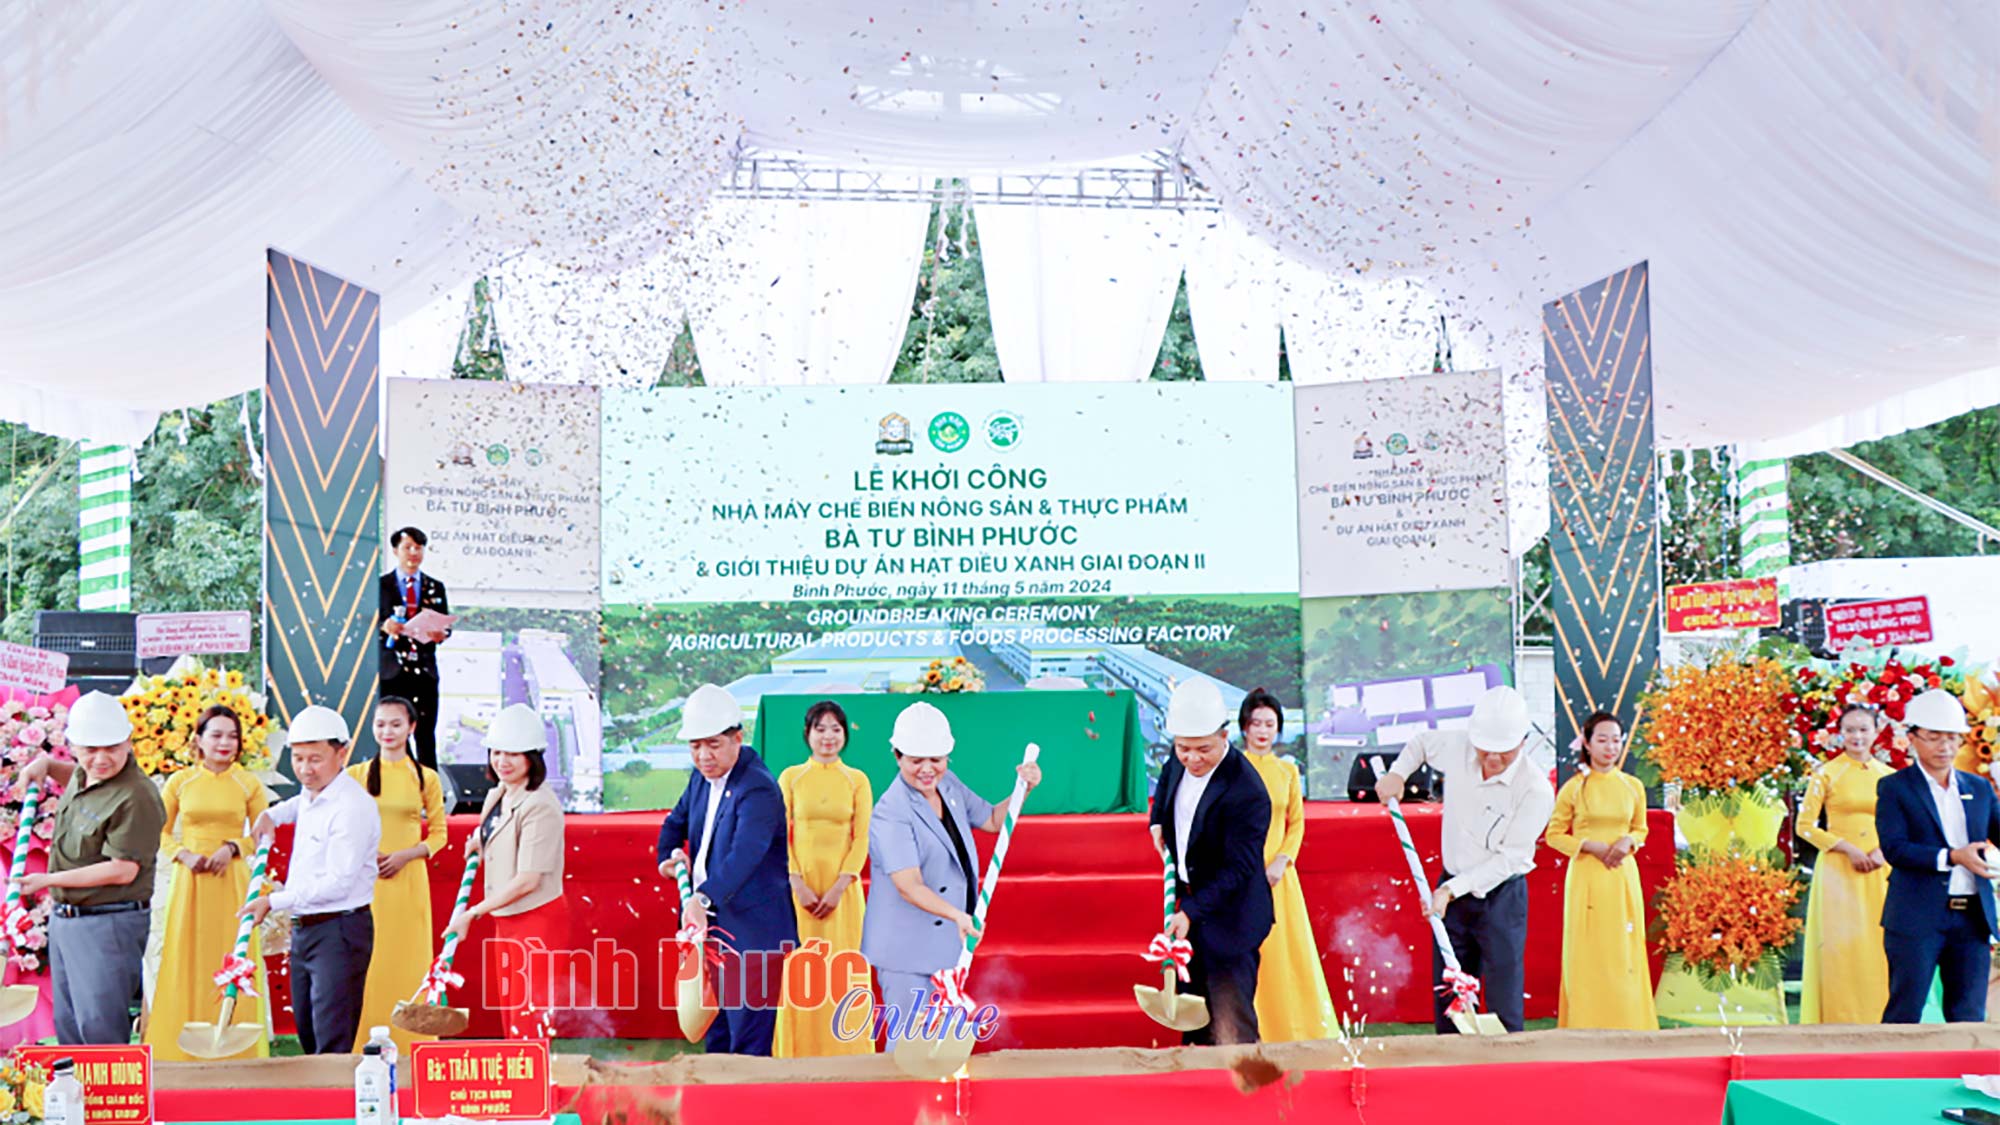 6,5 triệu USD đầu tư nhà máy chế biến nông sản thực phẩm Bà Tư Bình Phước